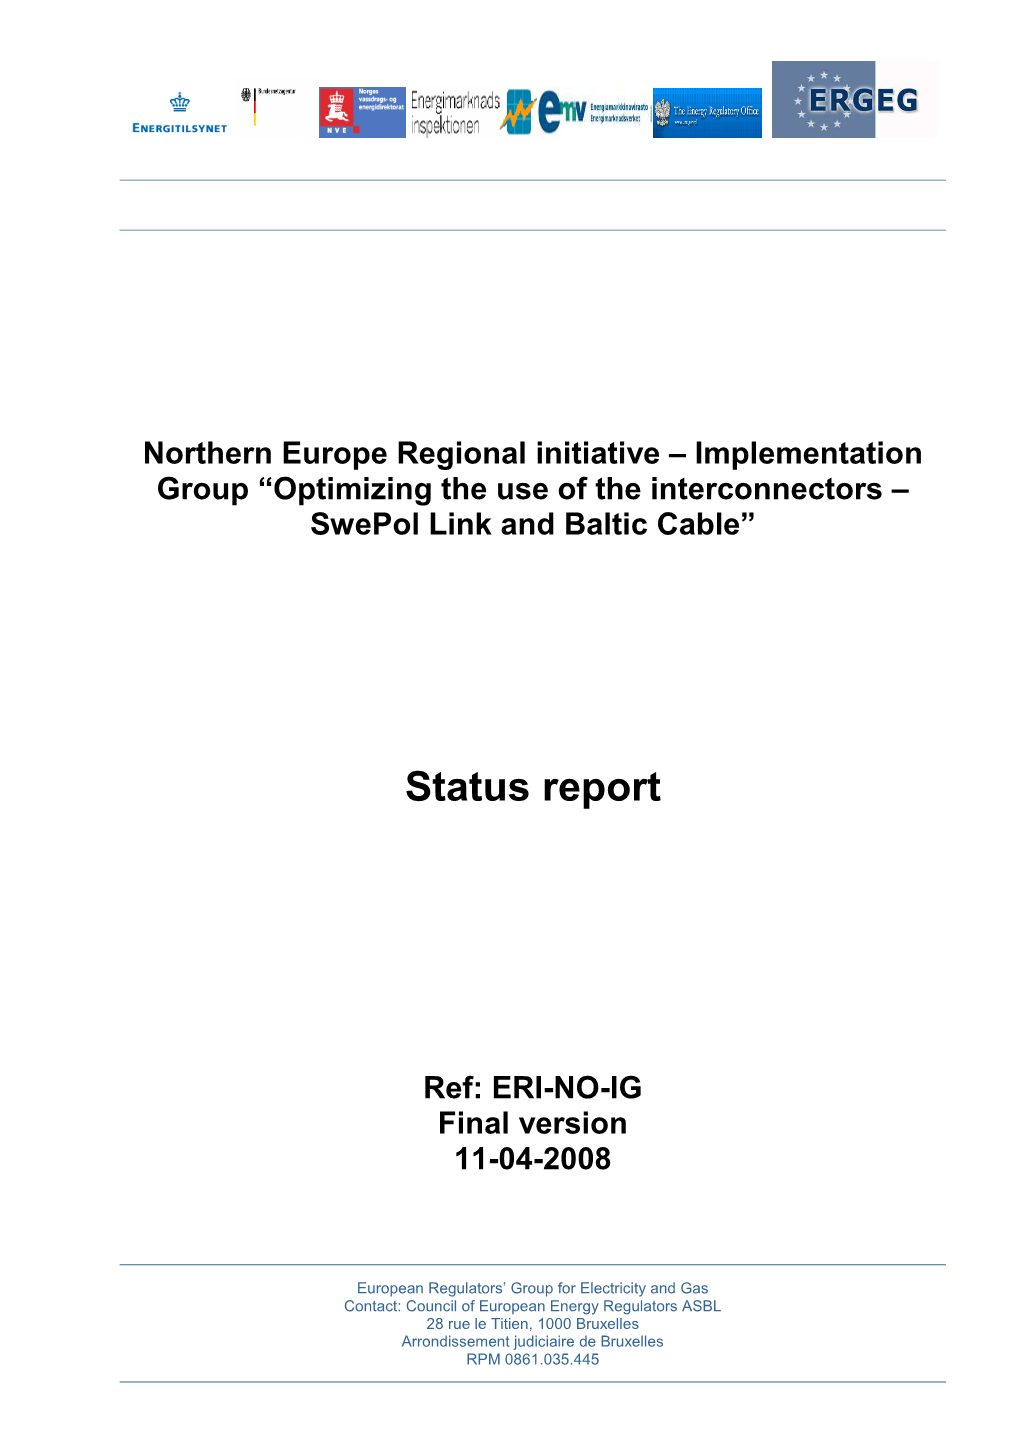 Status Report, Final Version, 080229